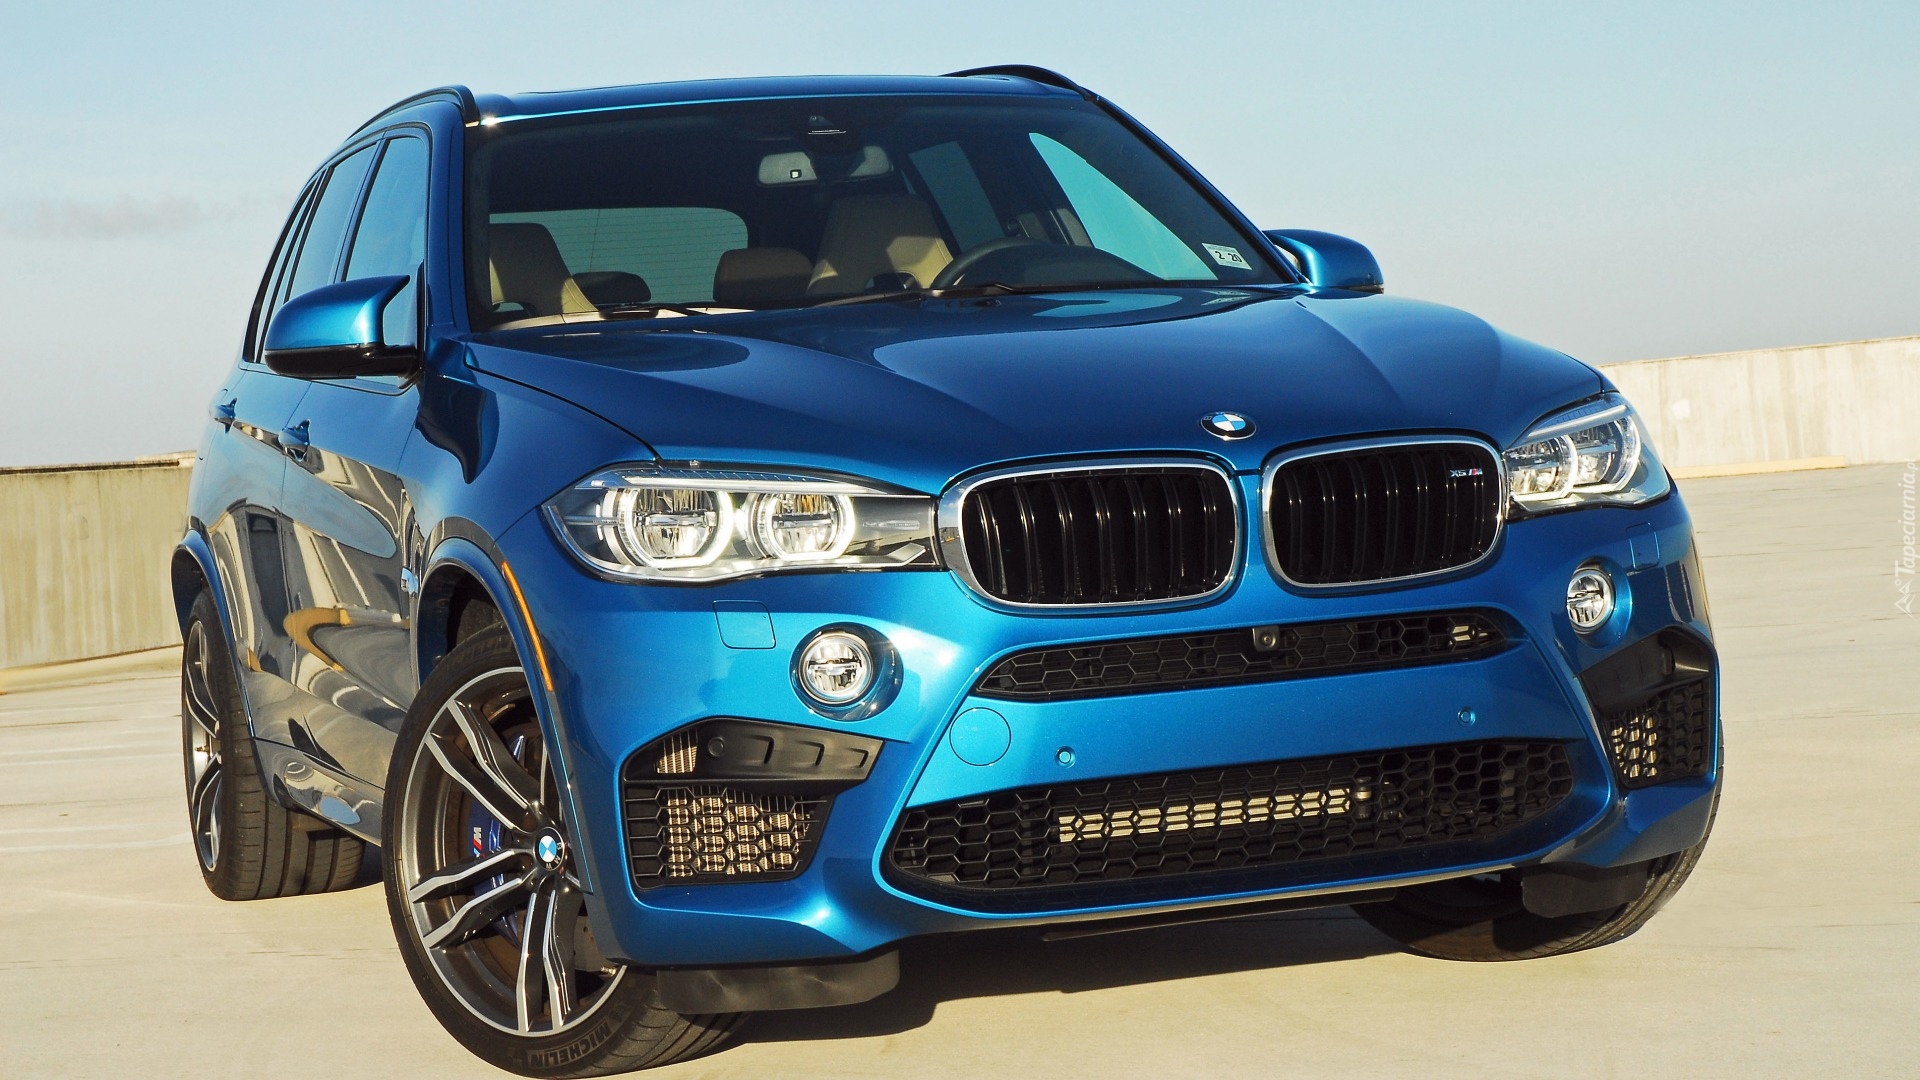 Niebieski samochód BMW X5 M rocznik 2015